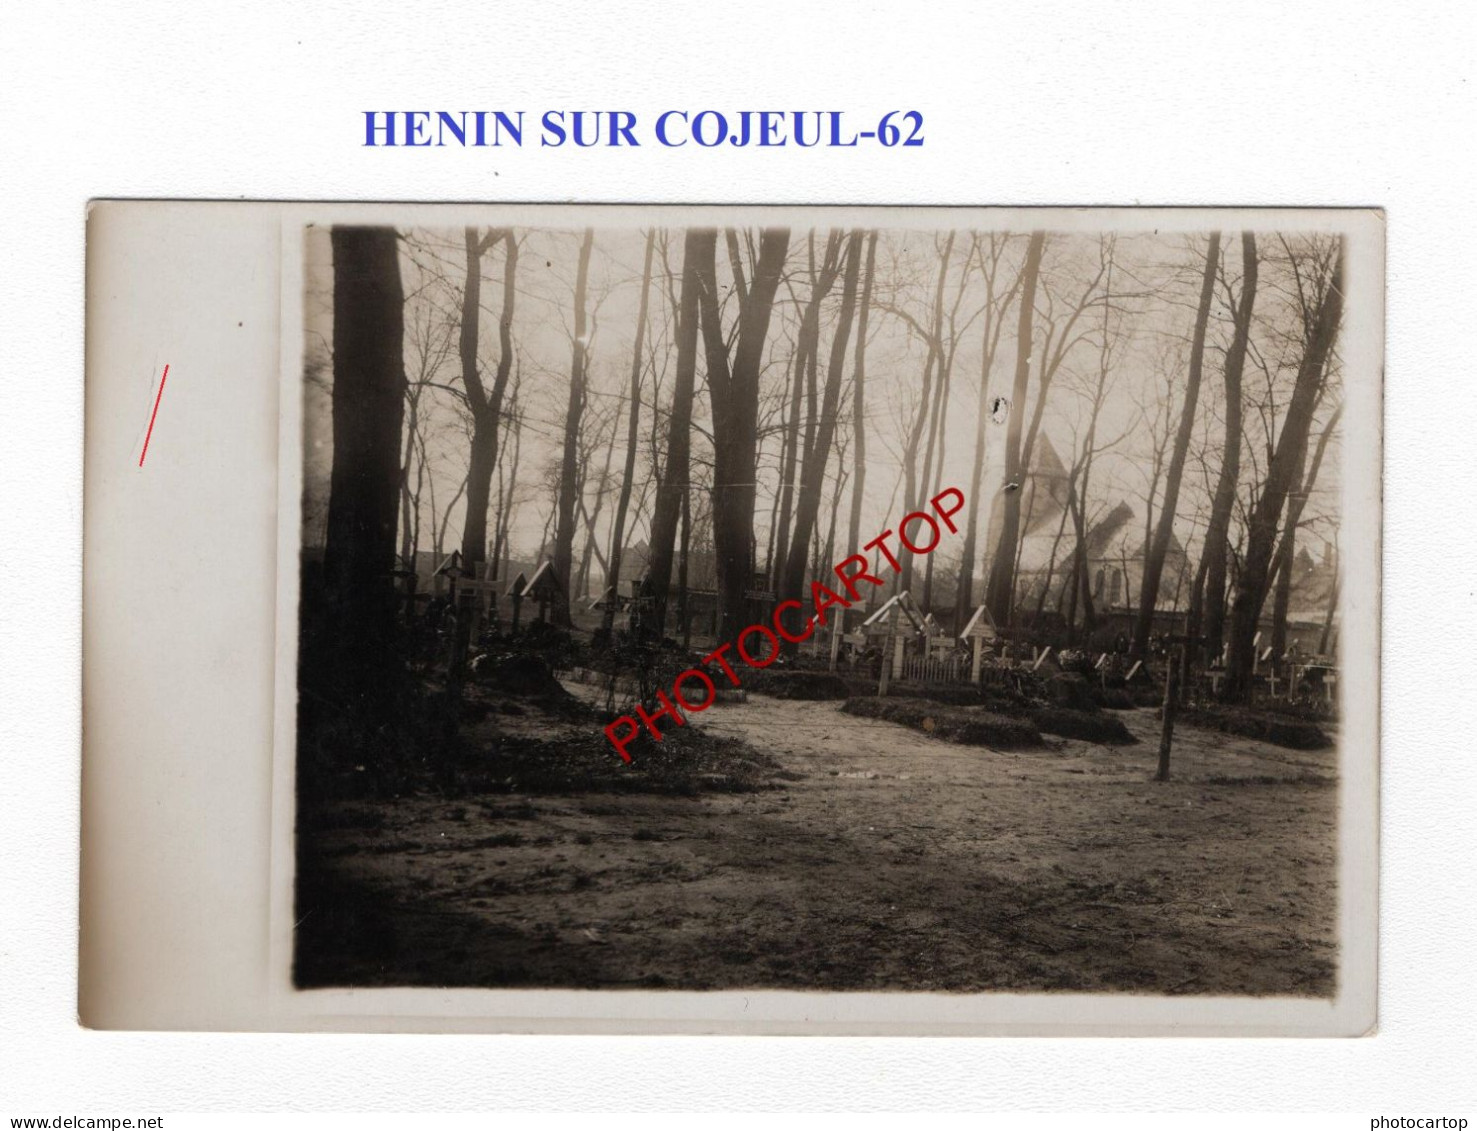 HENIN SUR COJEUL-62-Cimetiere-Tombes-CARTE PHOTO Allemande-GUERRE 14-18-1 WK-MILITARIA- - Soldatenfriedhöfen